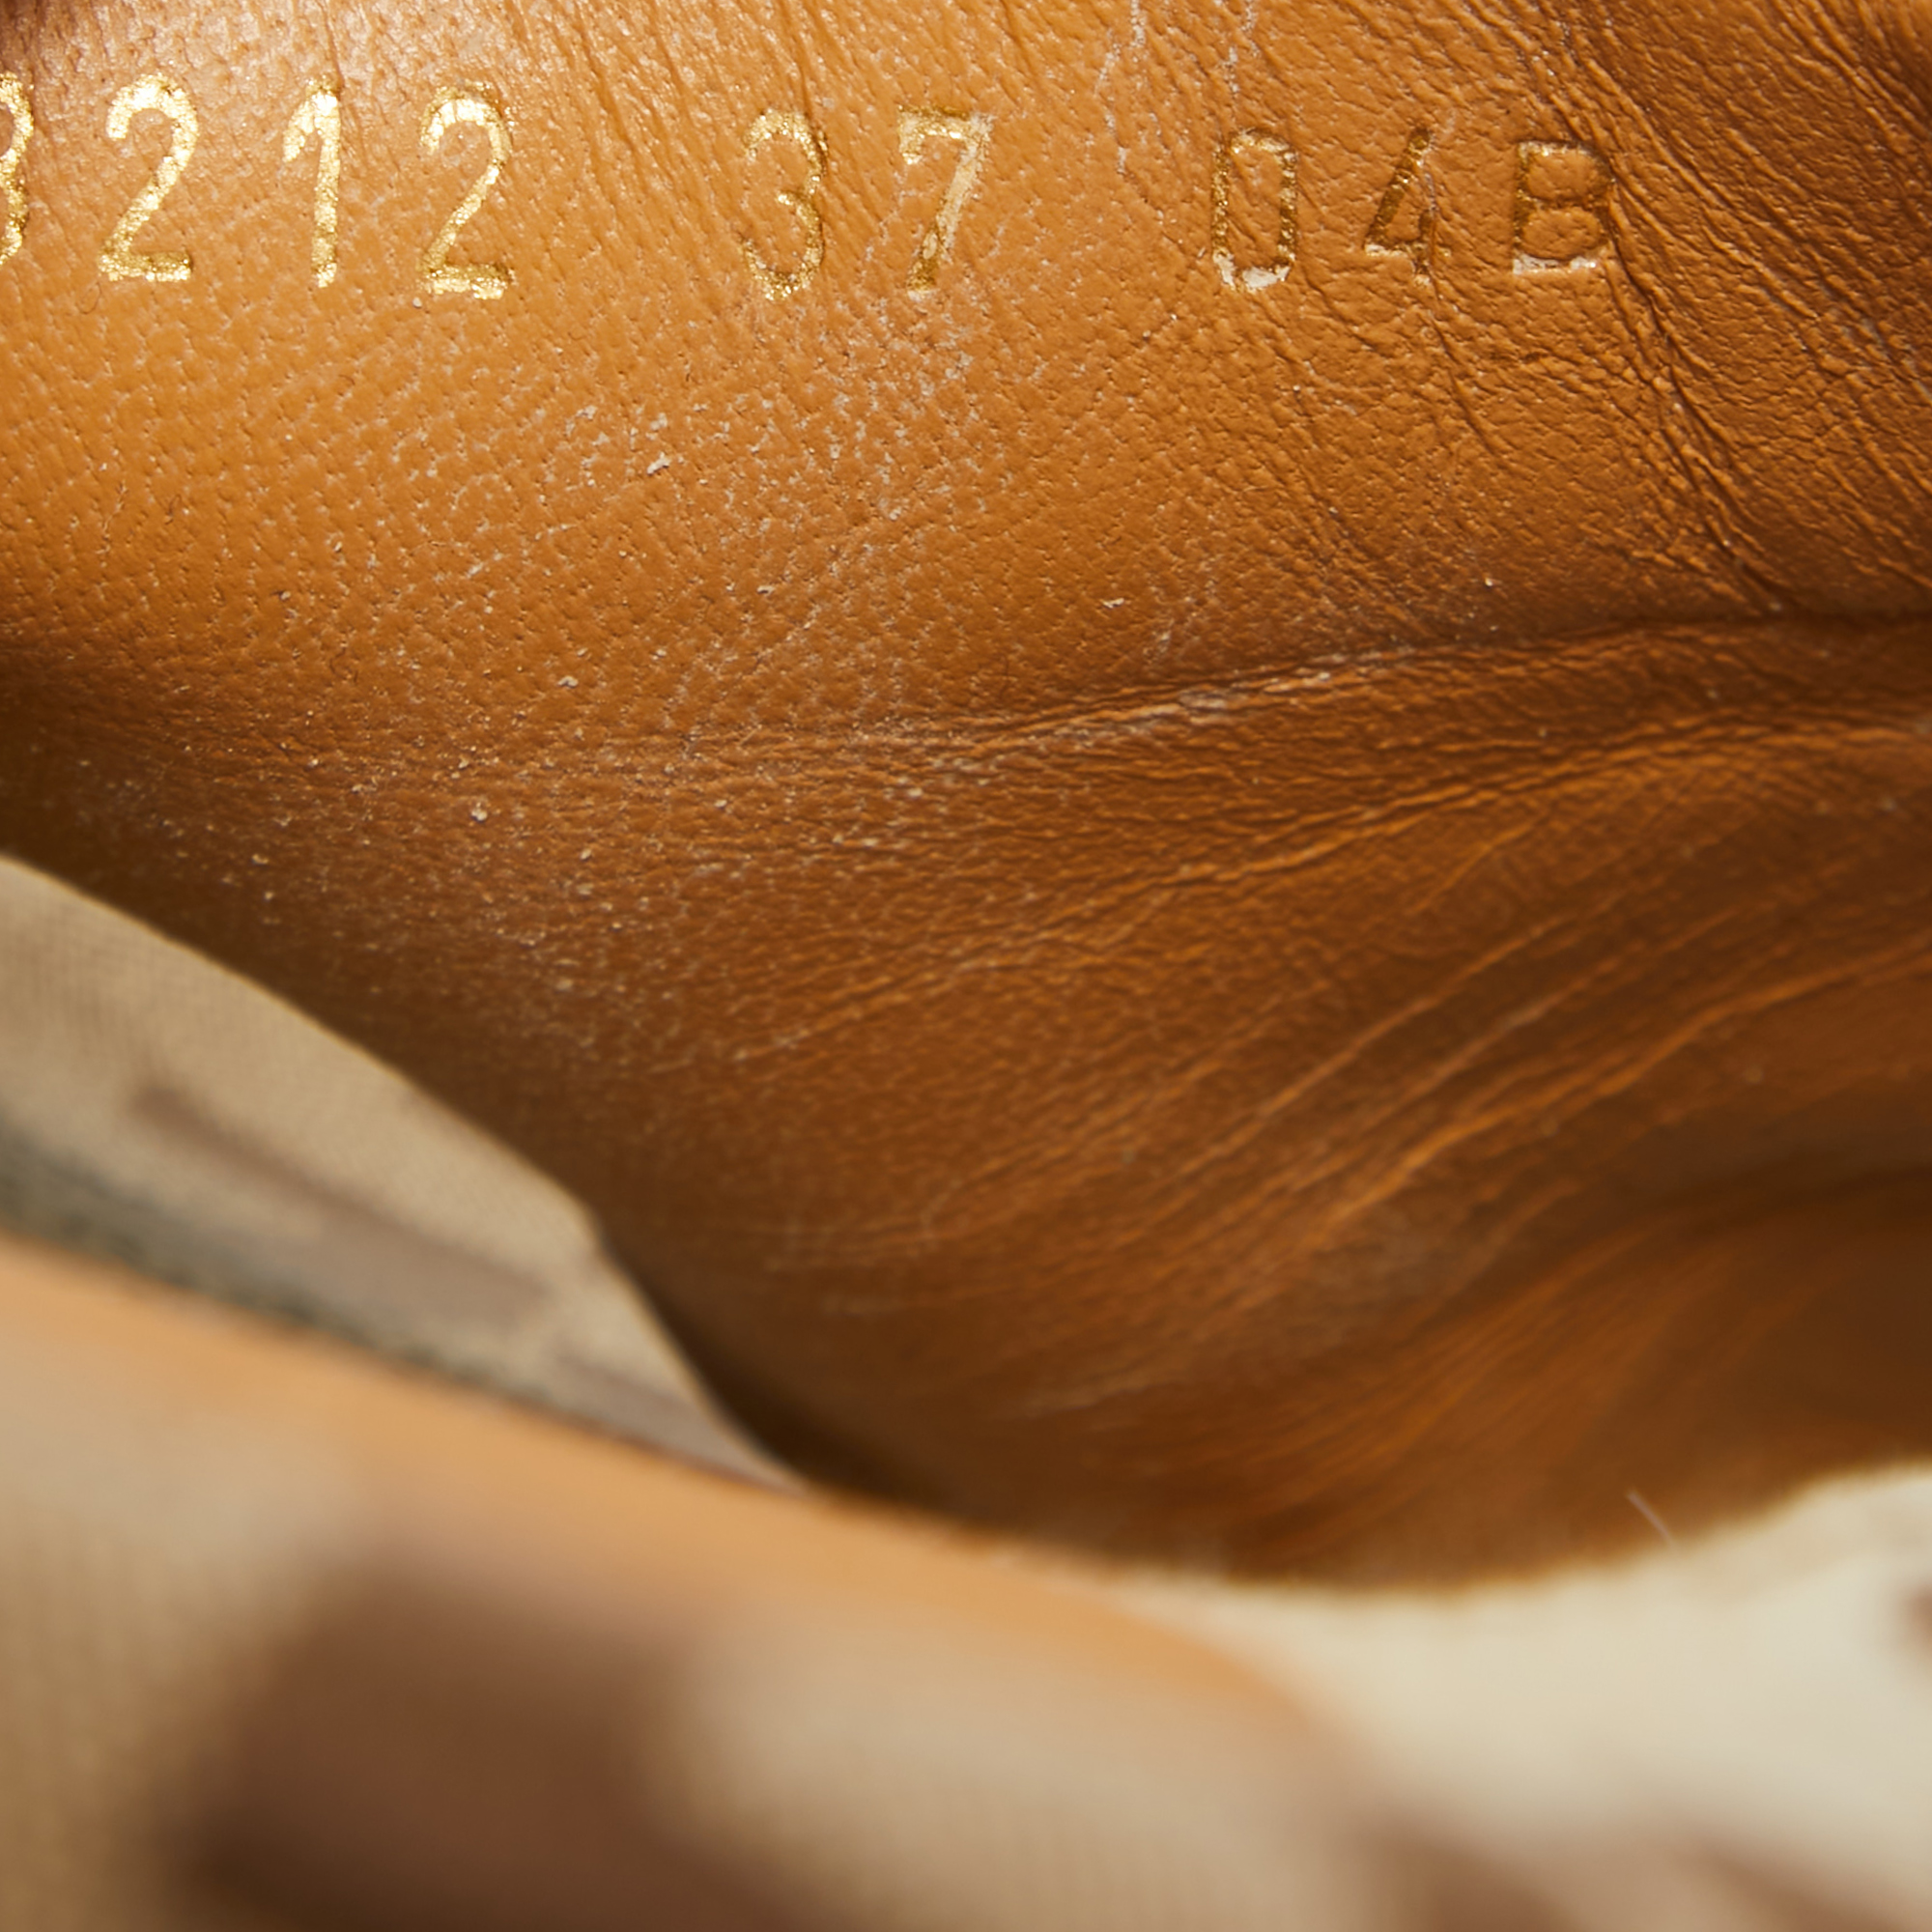 Gucci Brown/Beige GG Canvas Platform Slide Sandals Size 37